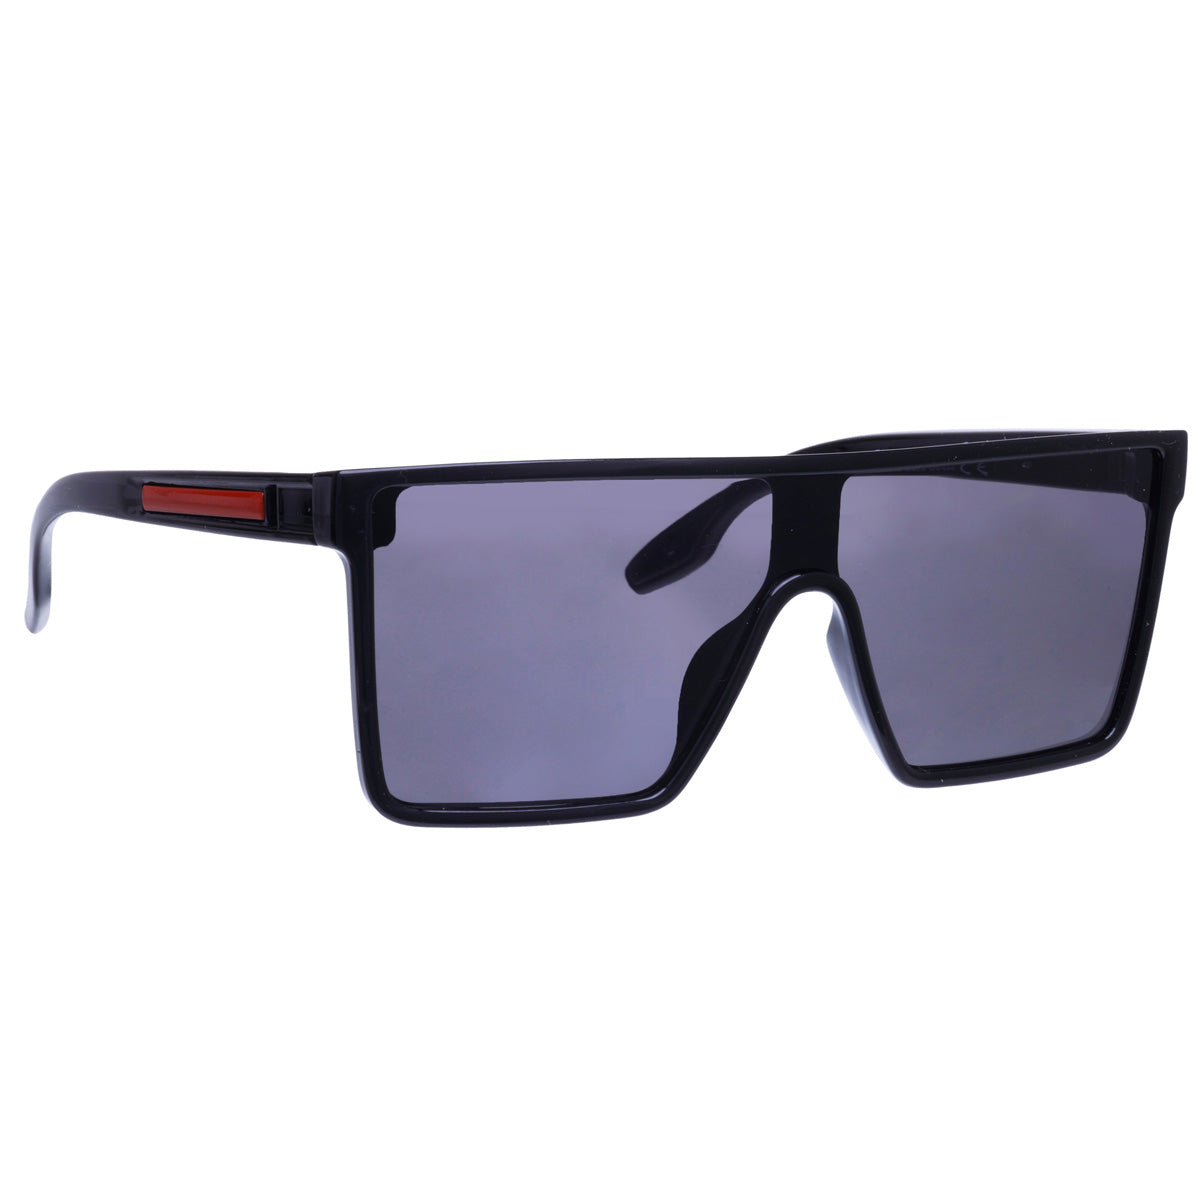 Angled flat top sunglasses